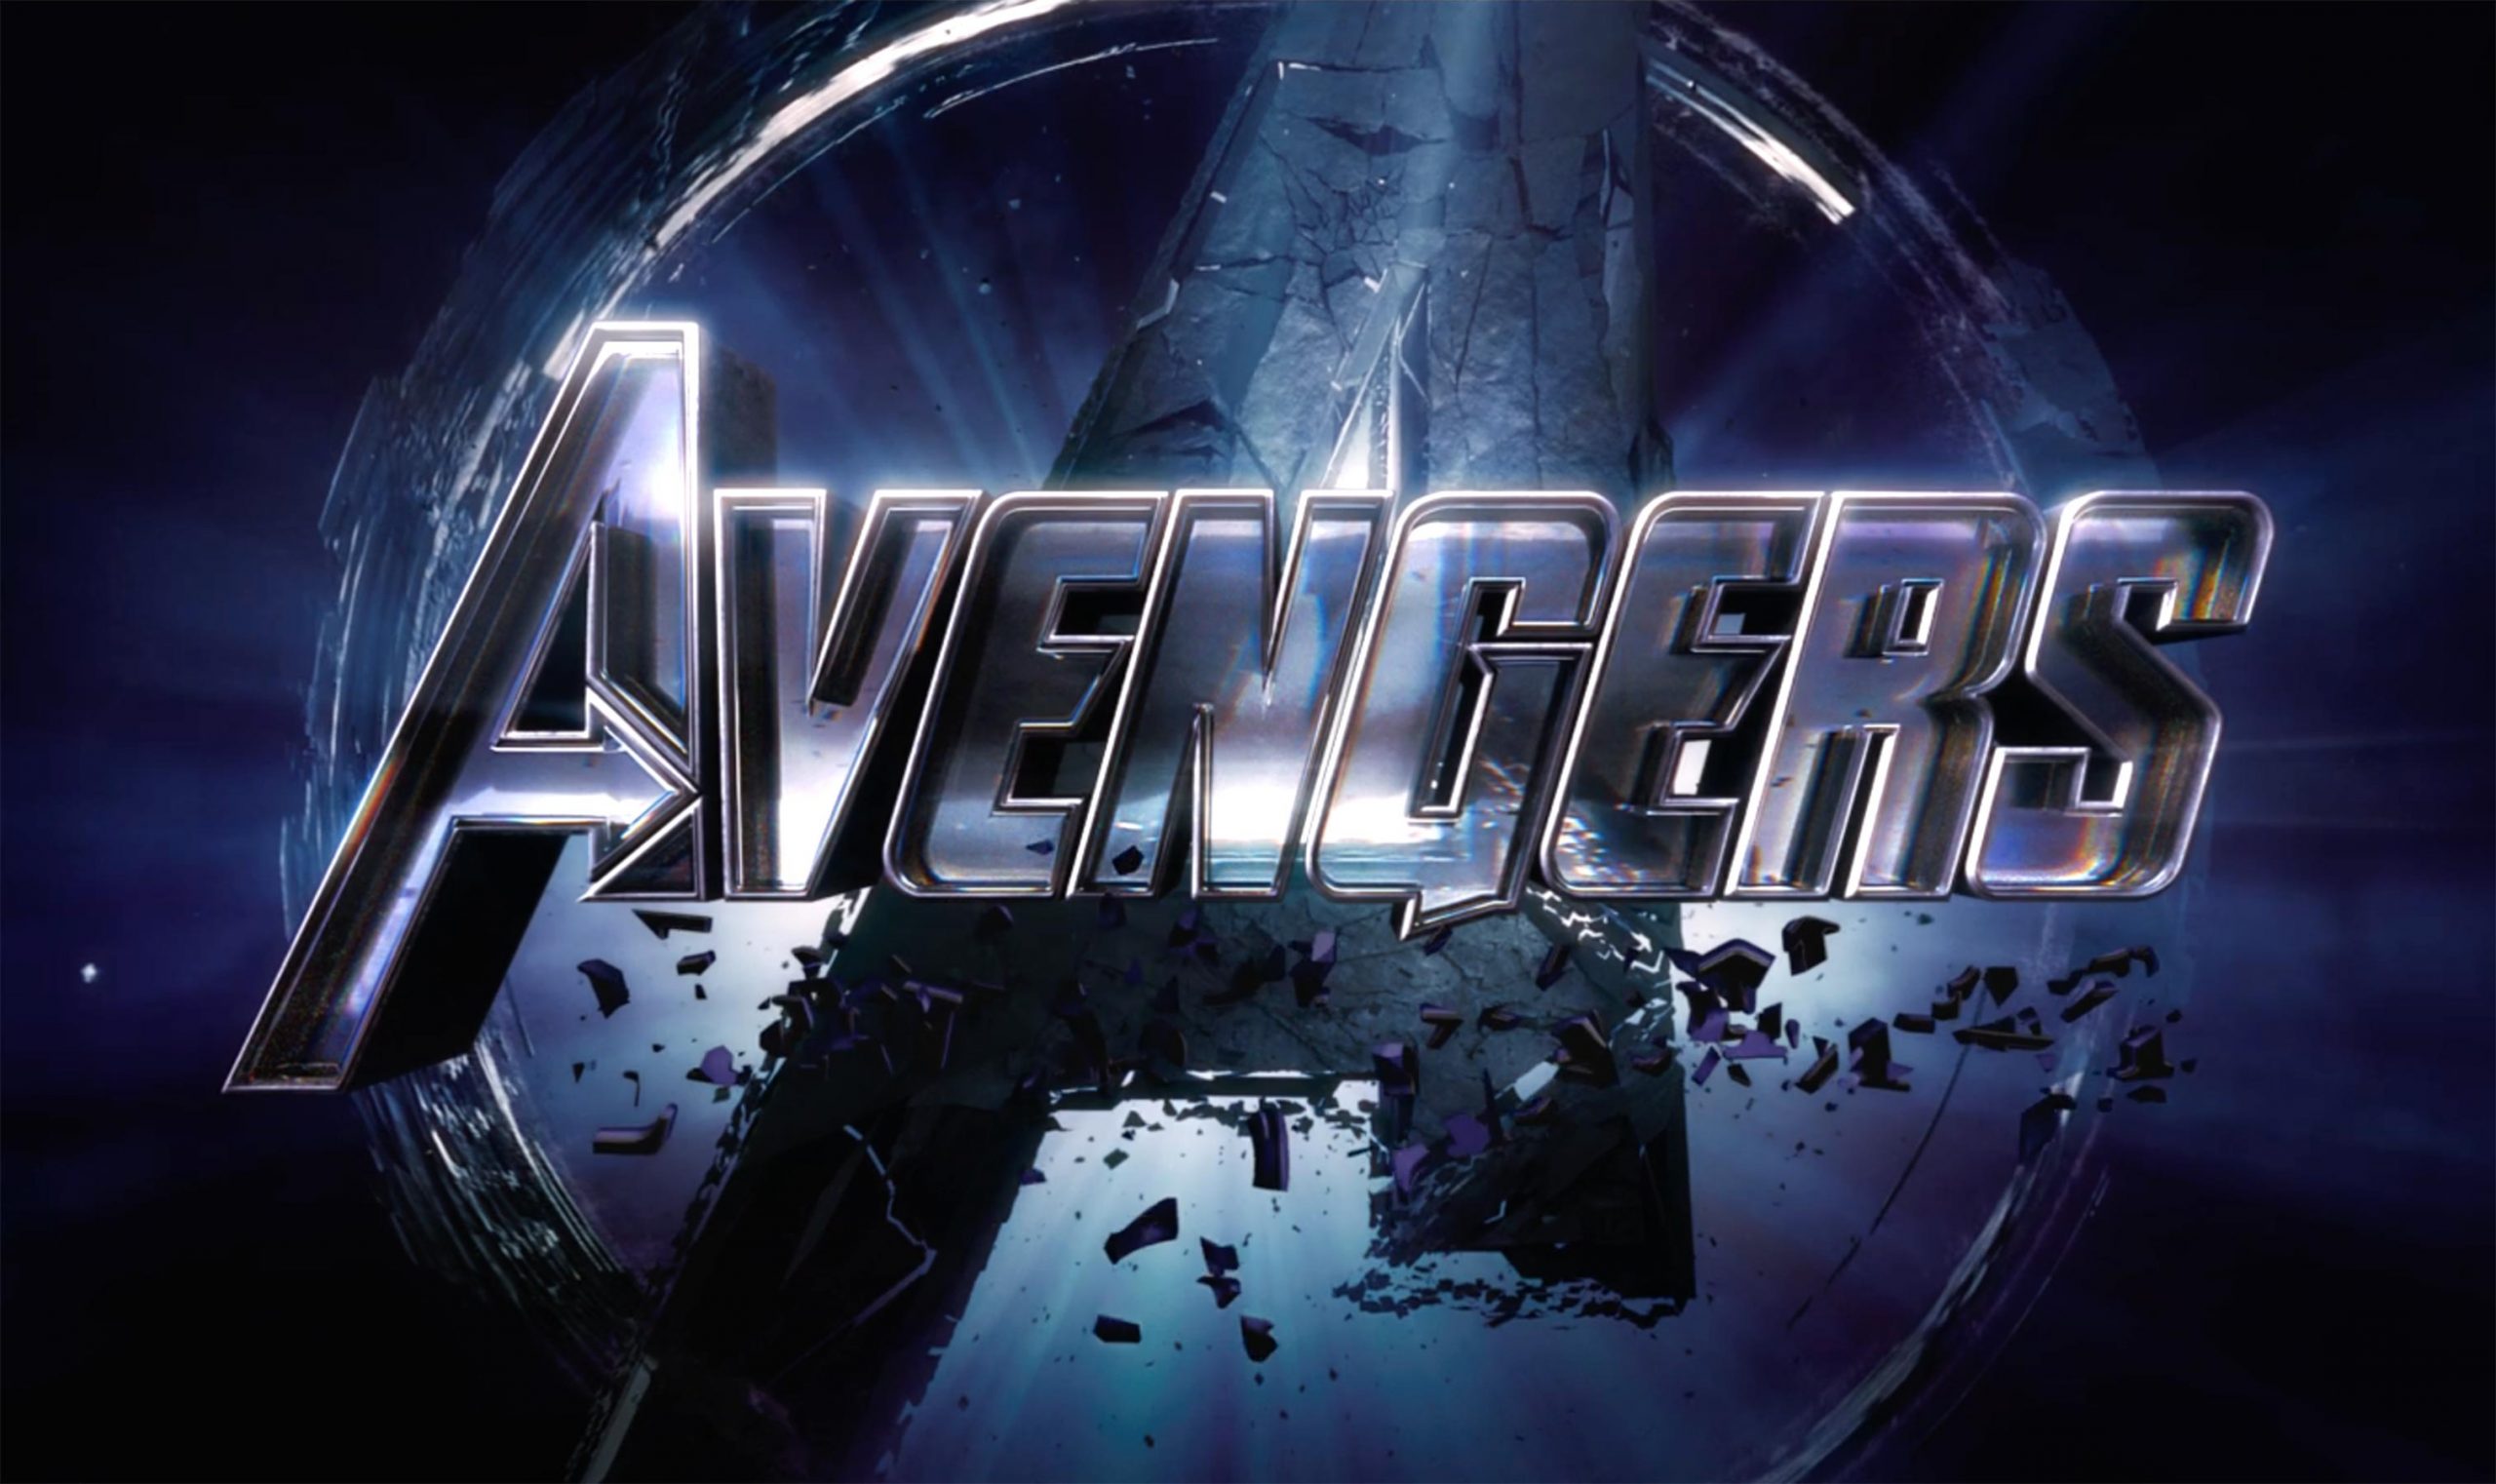 avengers-endgame-trailer-05